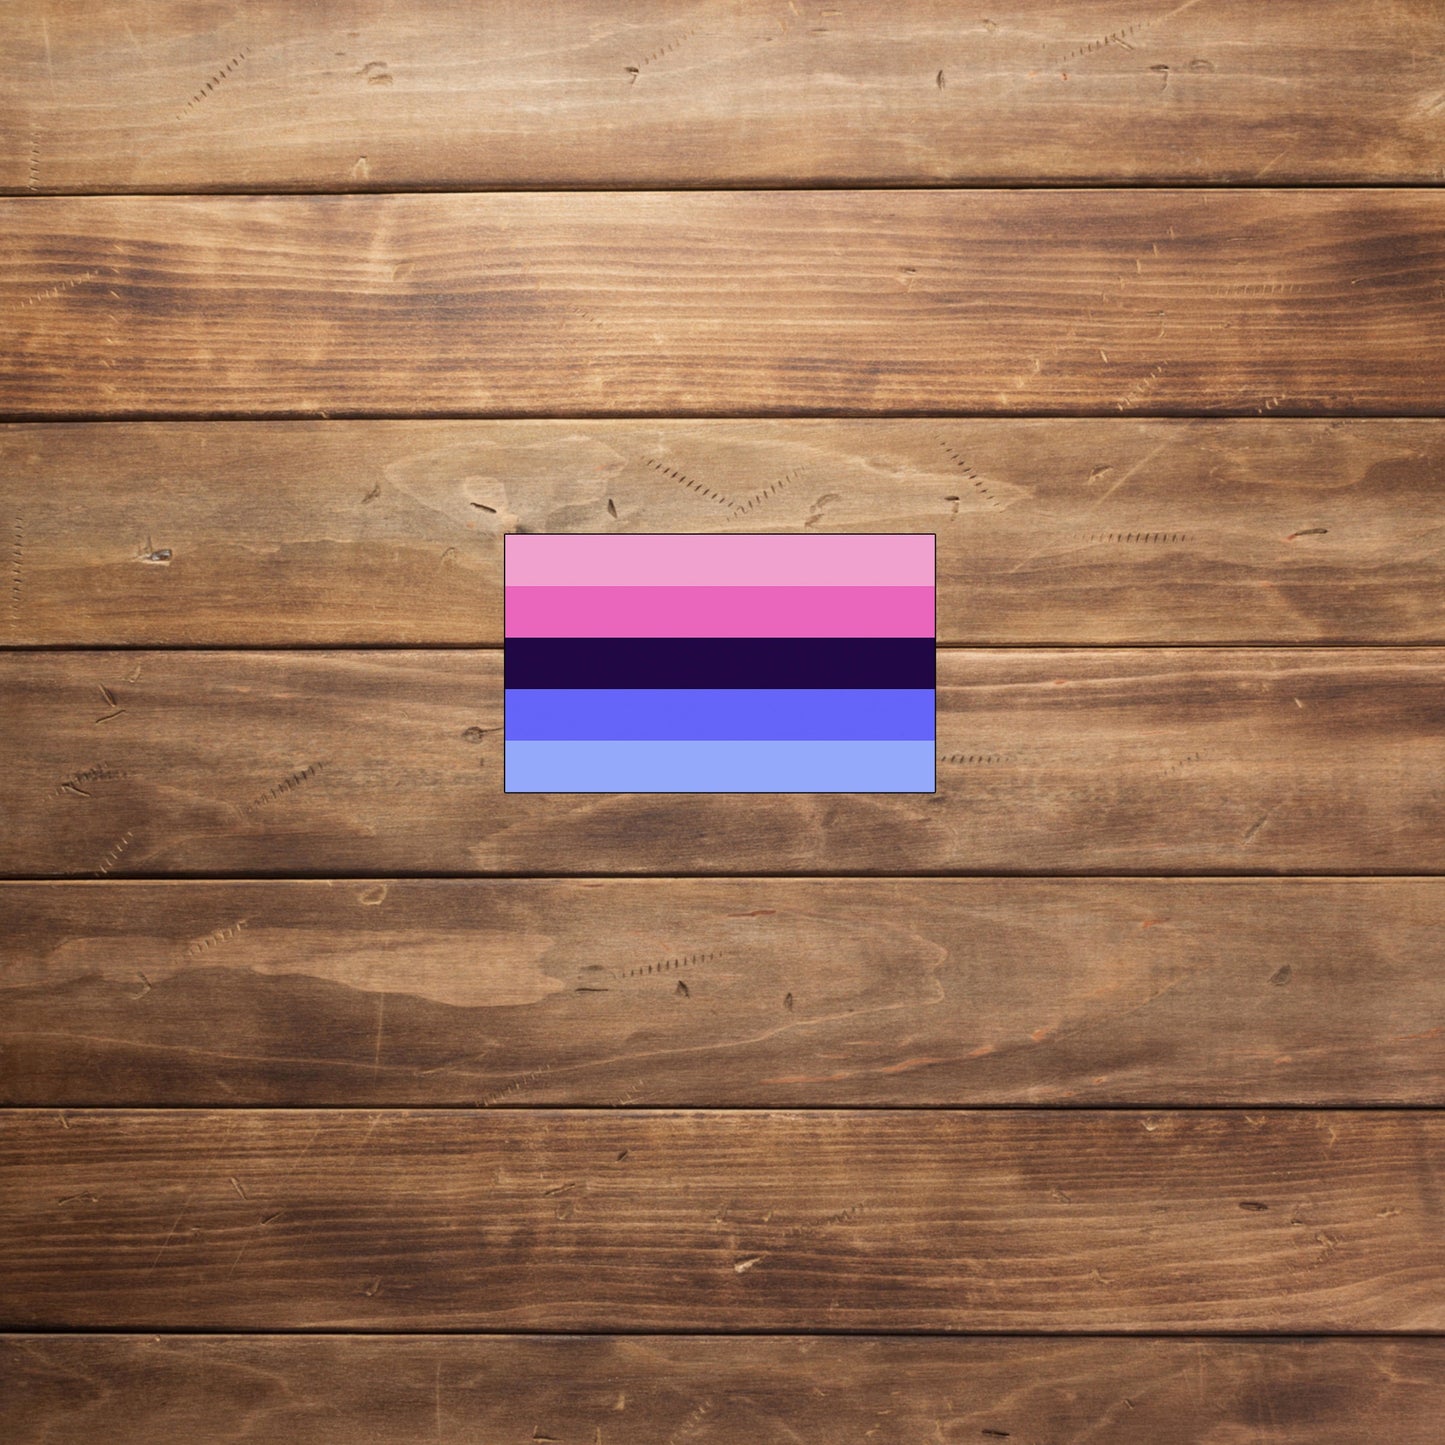 Omnisexual Pride Flag